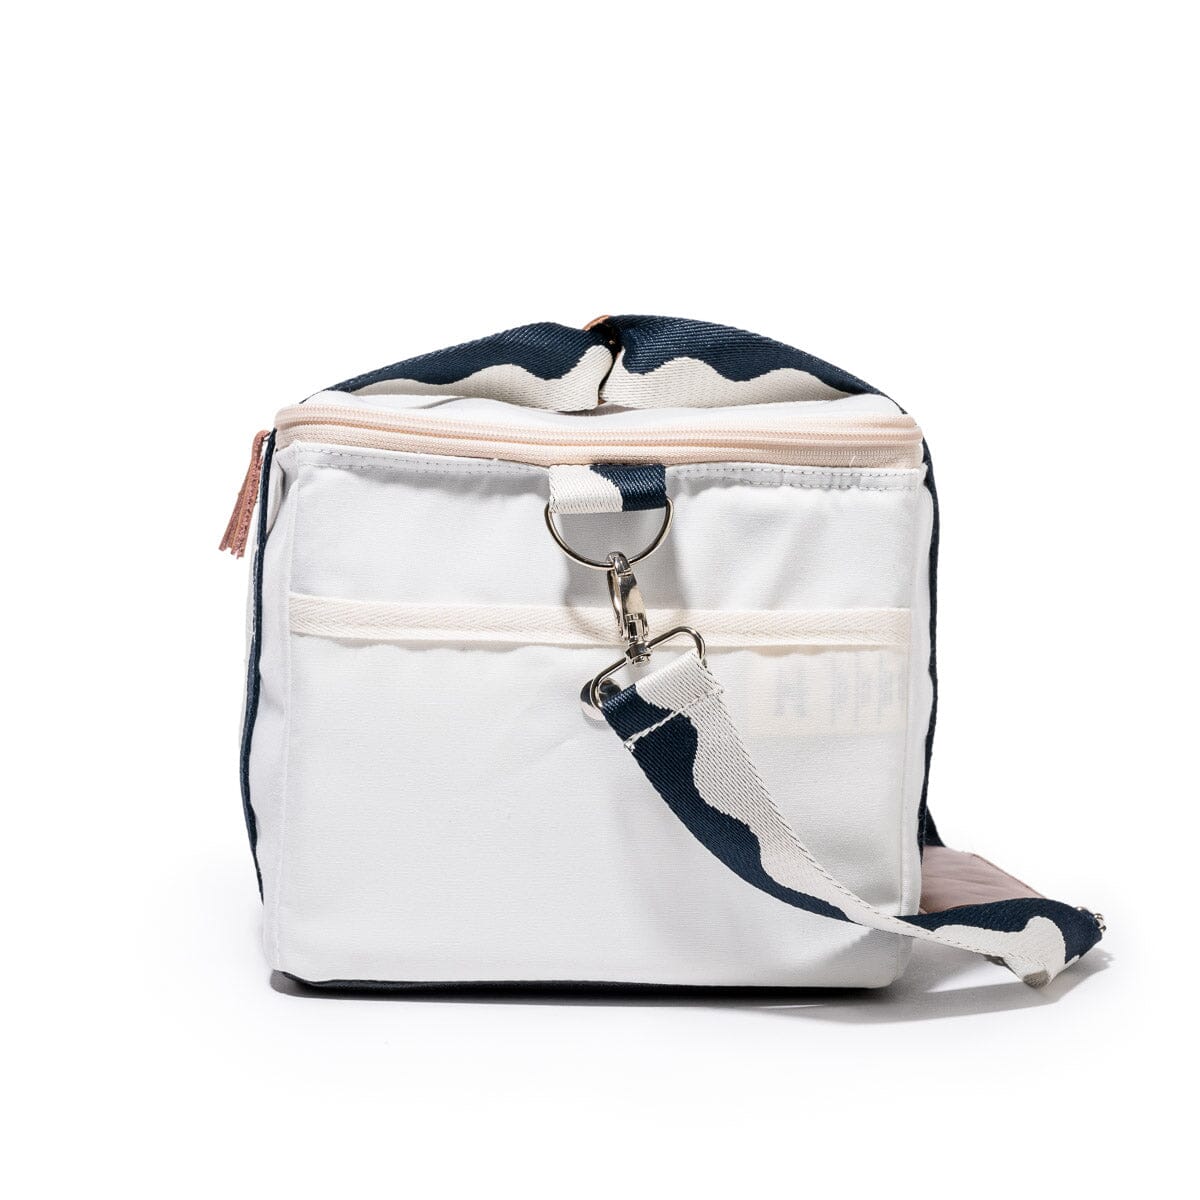 The Premium Cooler Bag - Rivie White Premium Cooler Business & Pleasure Co 